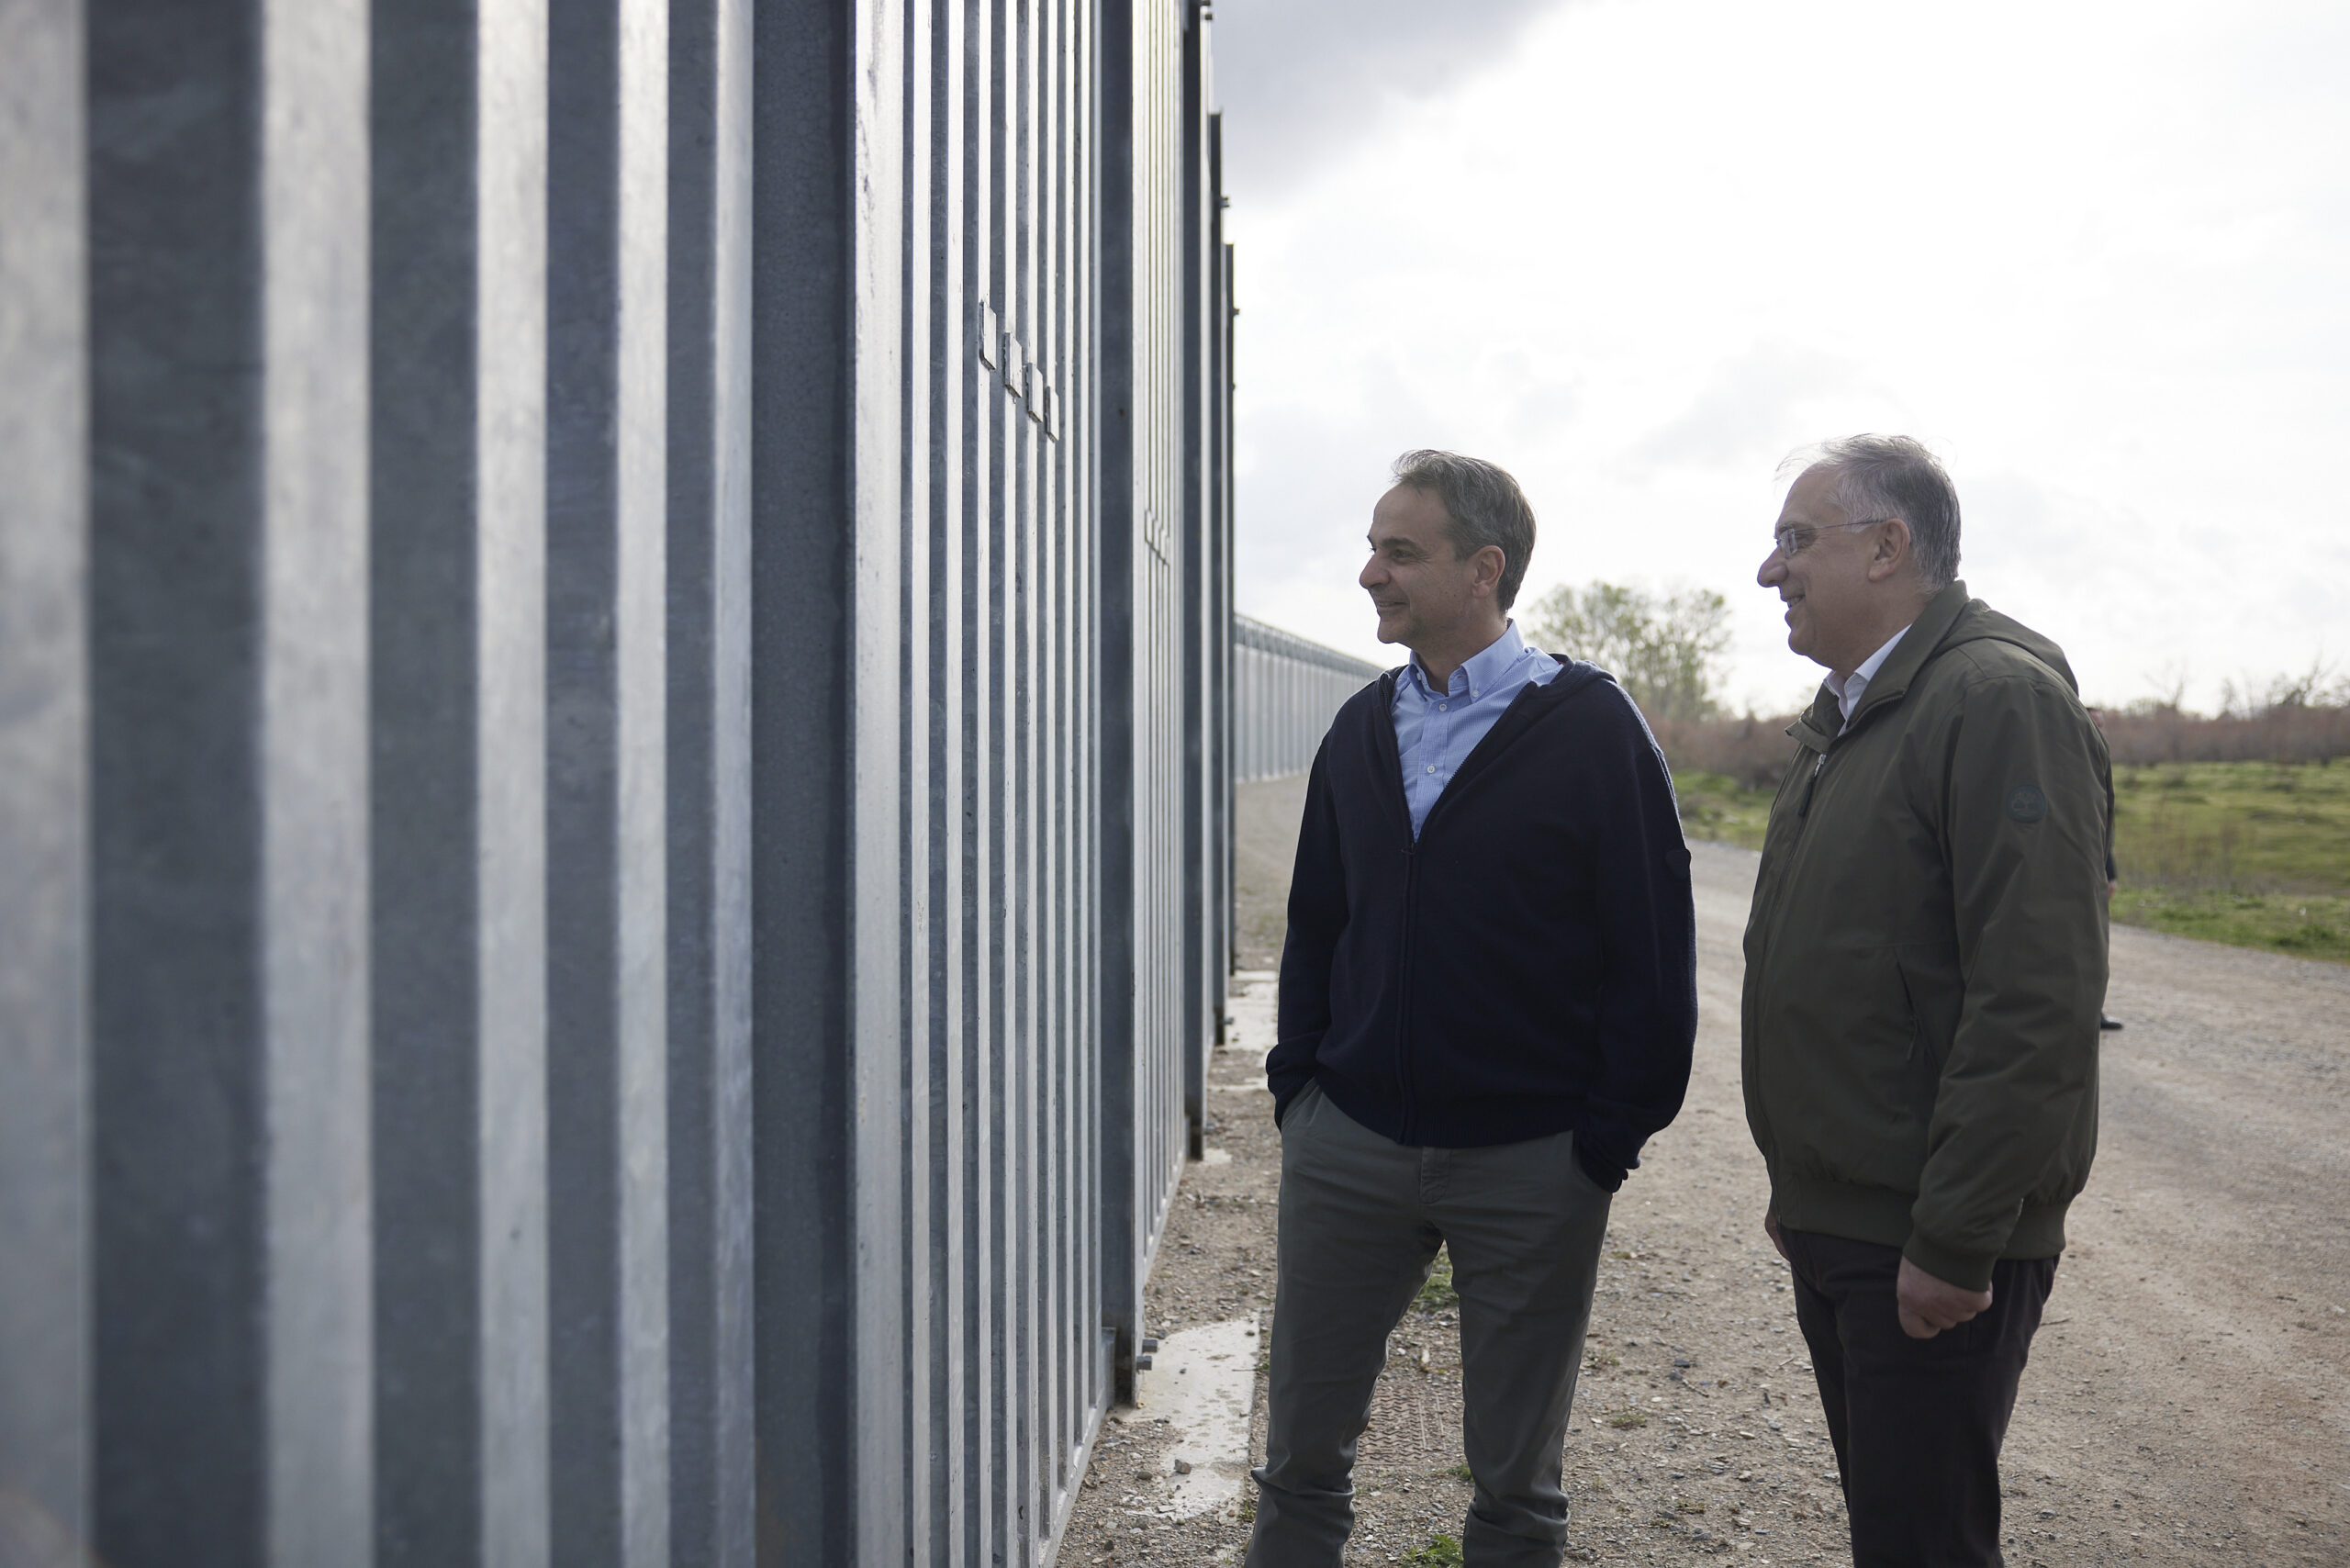 Τάκης Θεοδωρικάκος: Ο Φράχτης καθιστά απροσπέλαστα τα σύνορα απέναντι σε κάθε επιβουλή